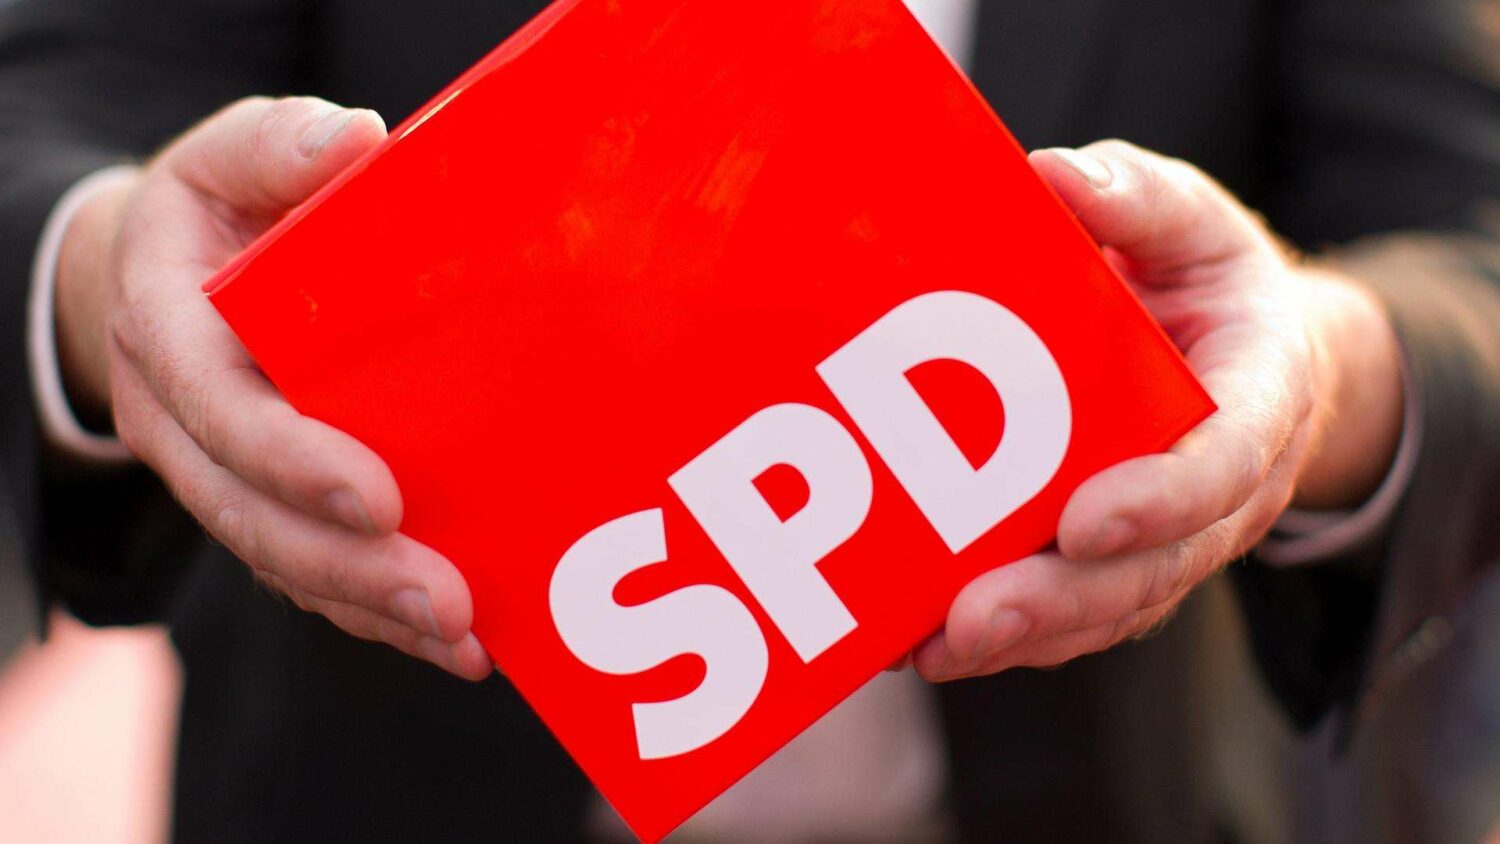 Γερμανία:To SPD κερδίζει τις εκλογές στο Ζάαρλαντ, έπειτα από 23 χρόνια κυριαρχίας του CDU